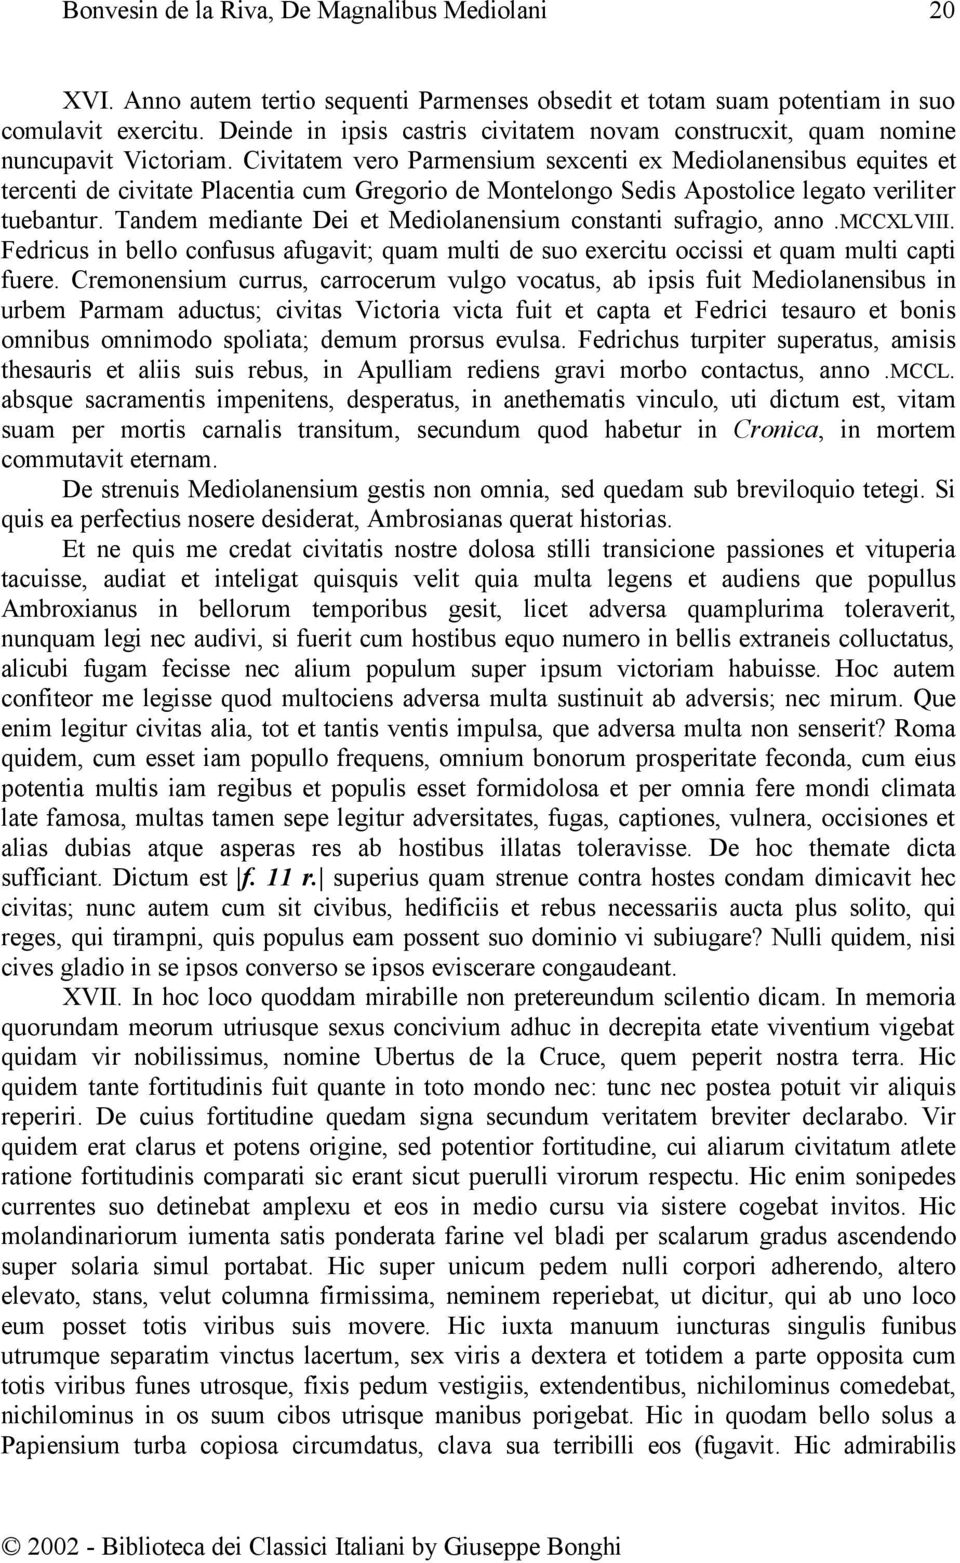 Tandem mediante Dei et Mediolanensium constanti sufragio, anno.mccxlviii. Fedricus in bello confusus afugavit; quam multi de suo exercitu occissi et quam multi capti fuere.